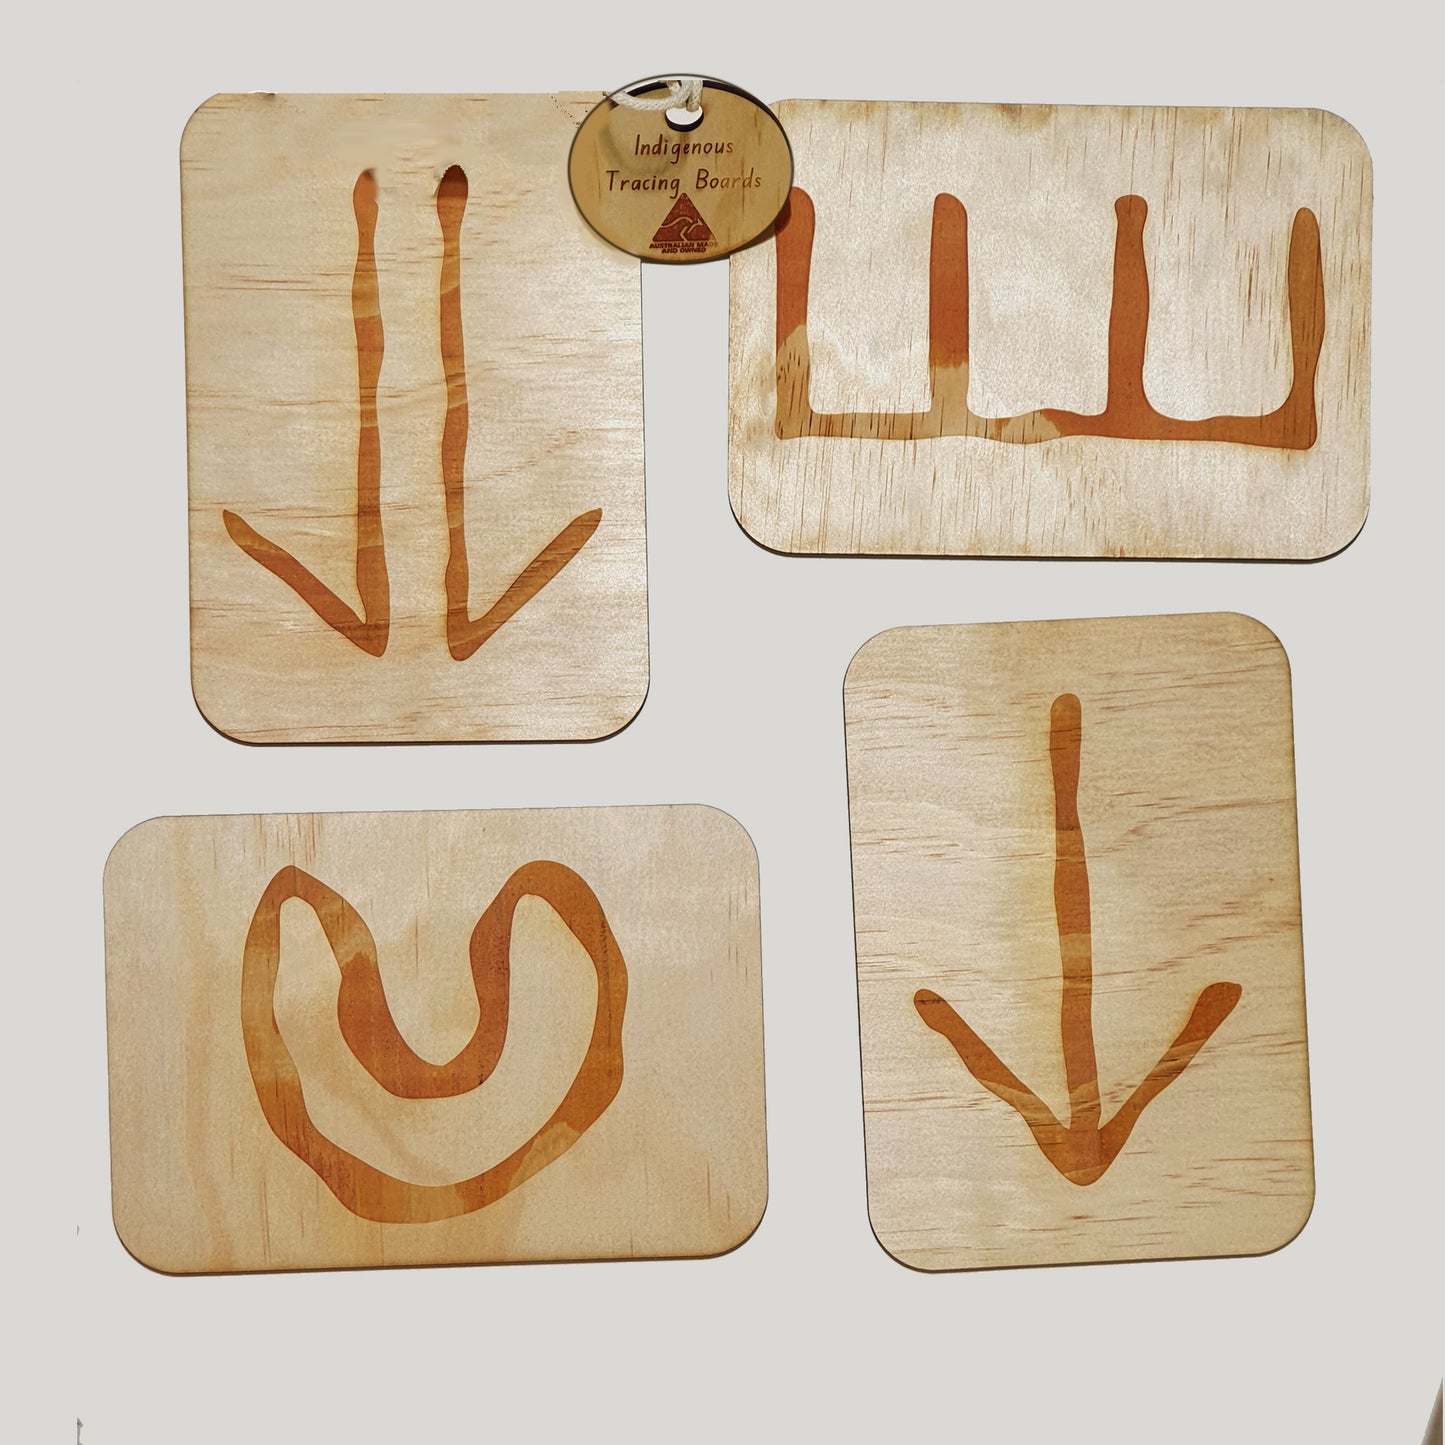 Tracing board set with Aboriginal symbols